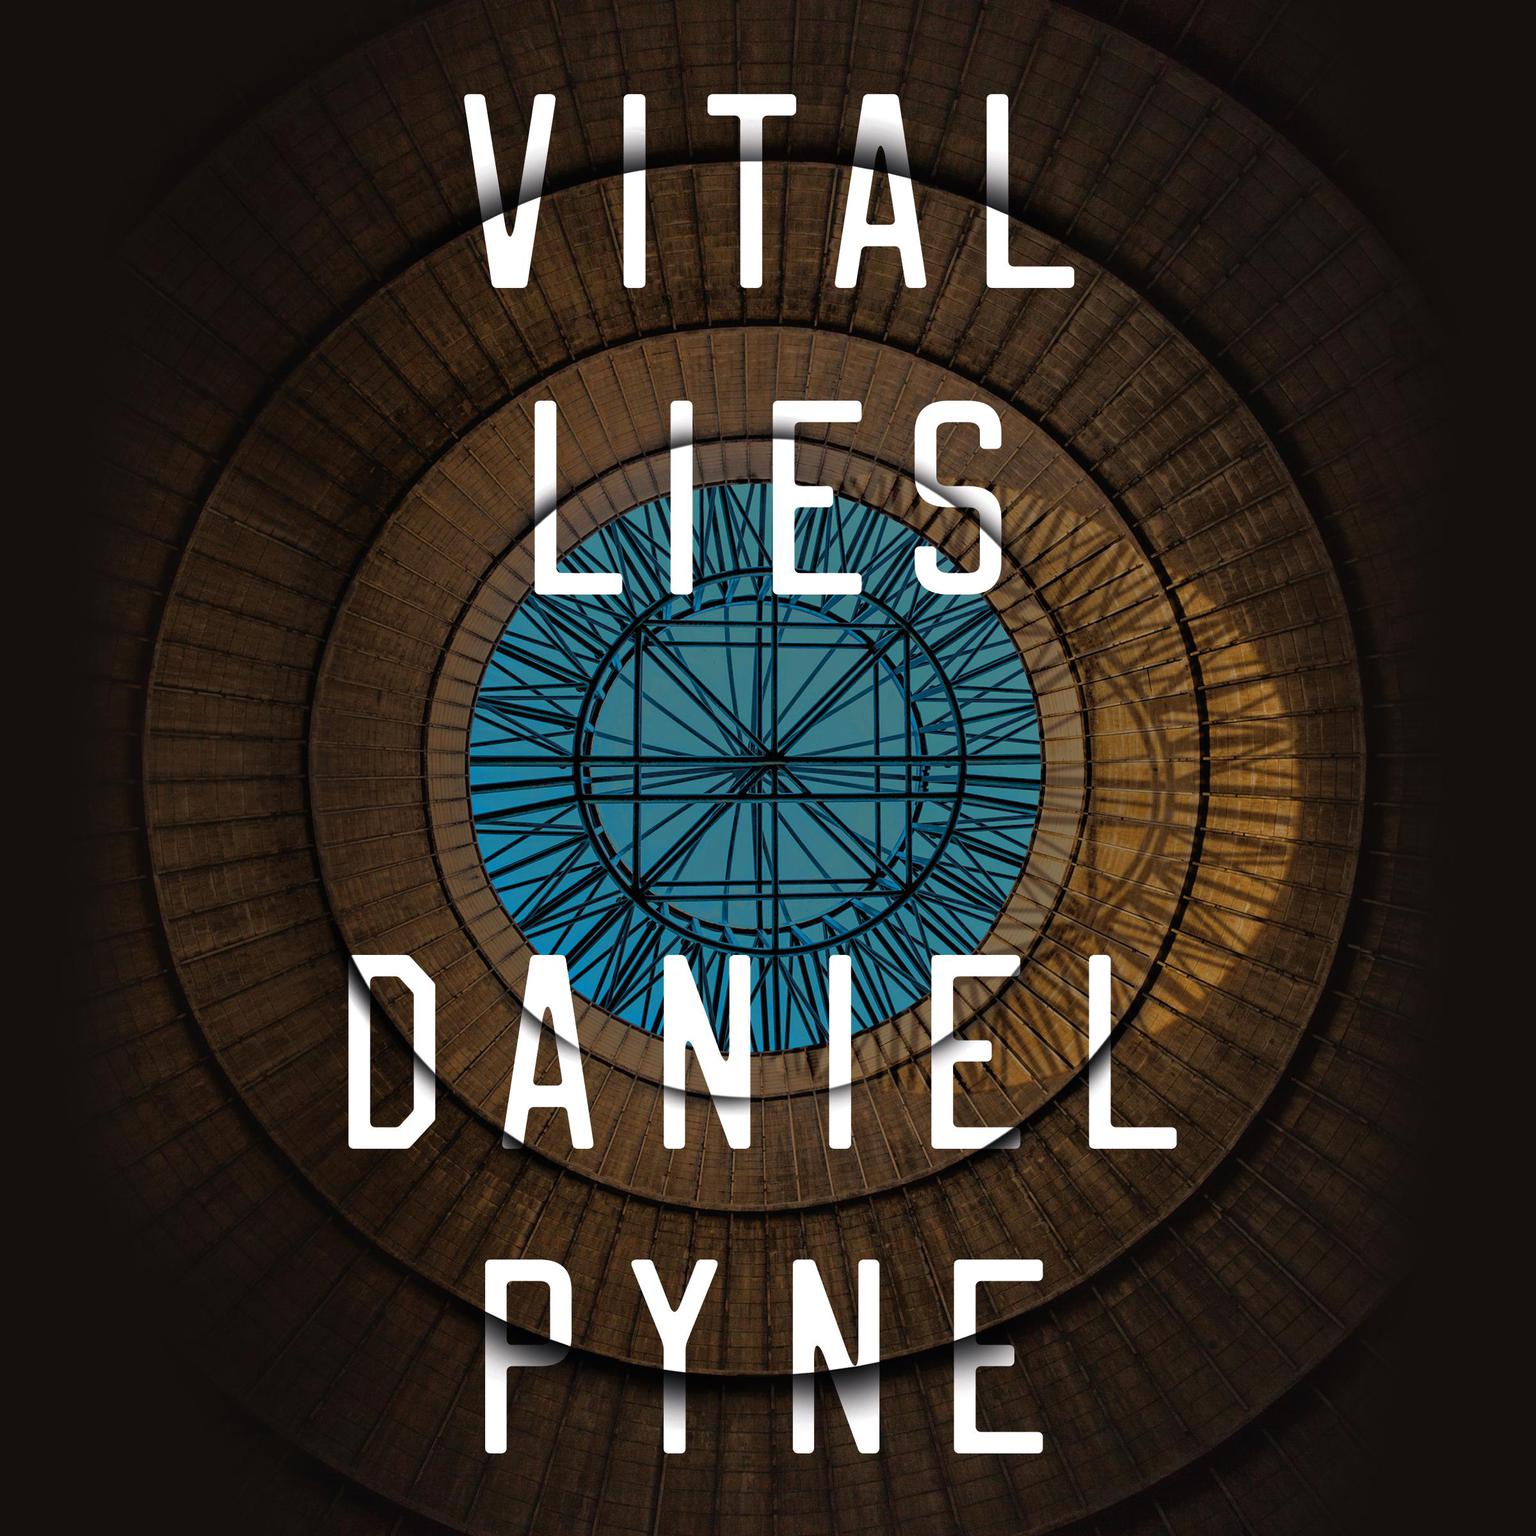 Vital Lies Audiobook, by Daniel Pyne